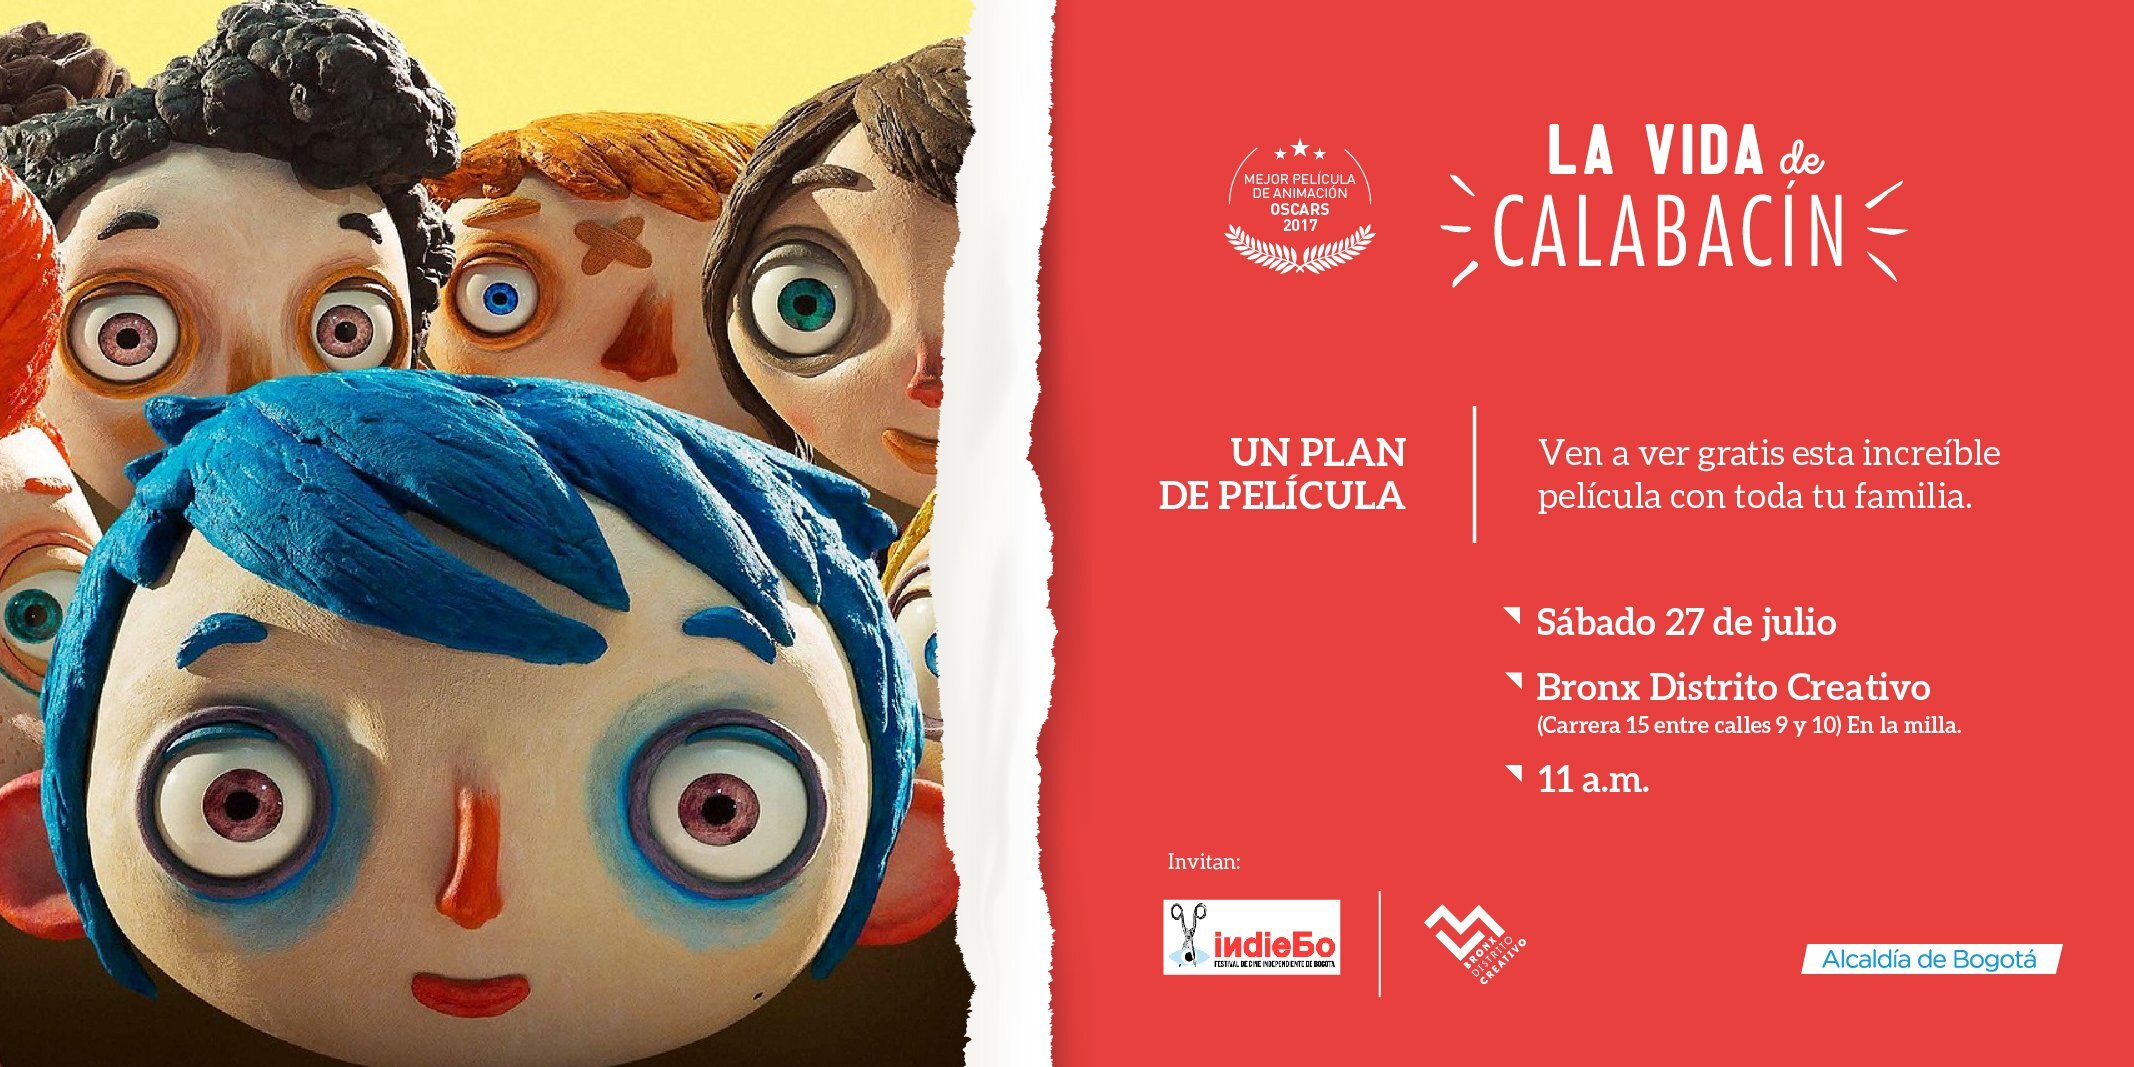 La película 'La Vida de Calabacín', llega a Bogotá y los ciudadanos podemos ir a verla gratis en el Bronx Distrito Creativo 